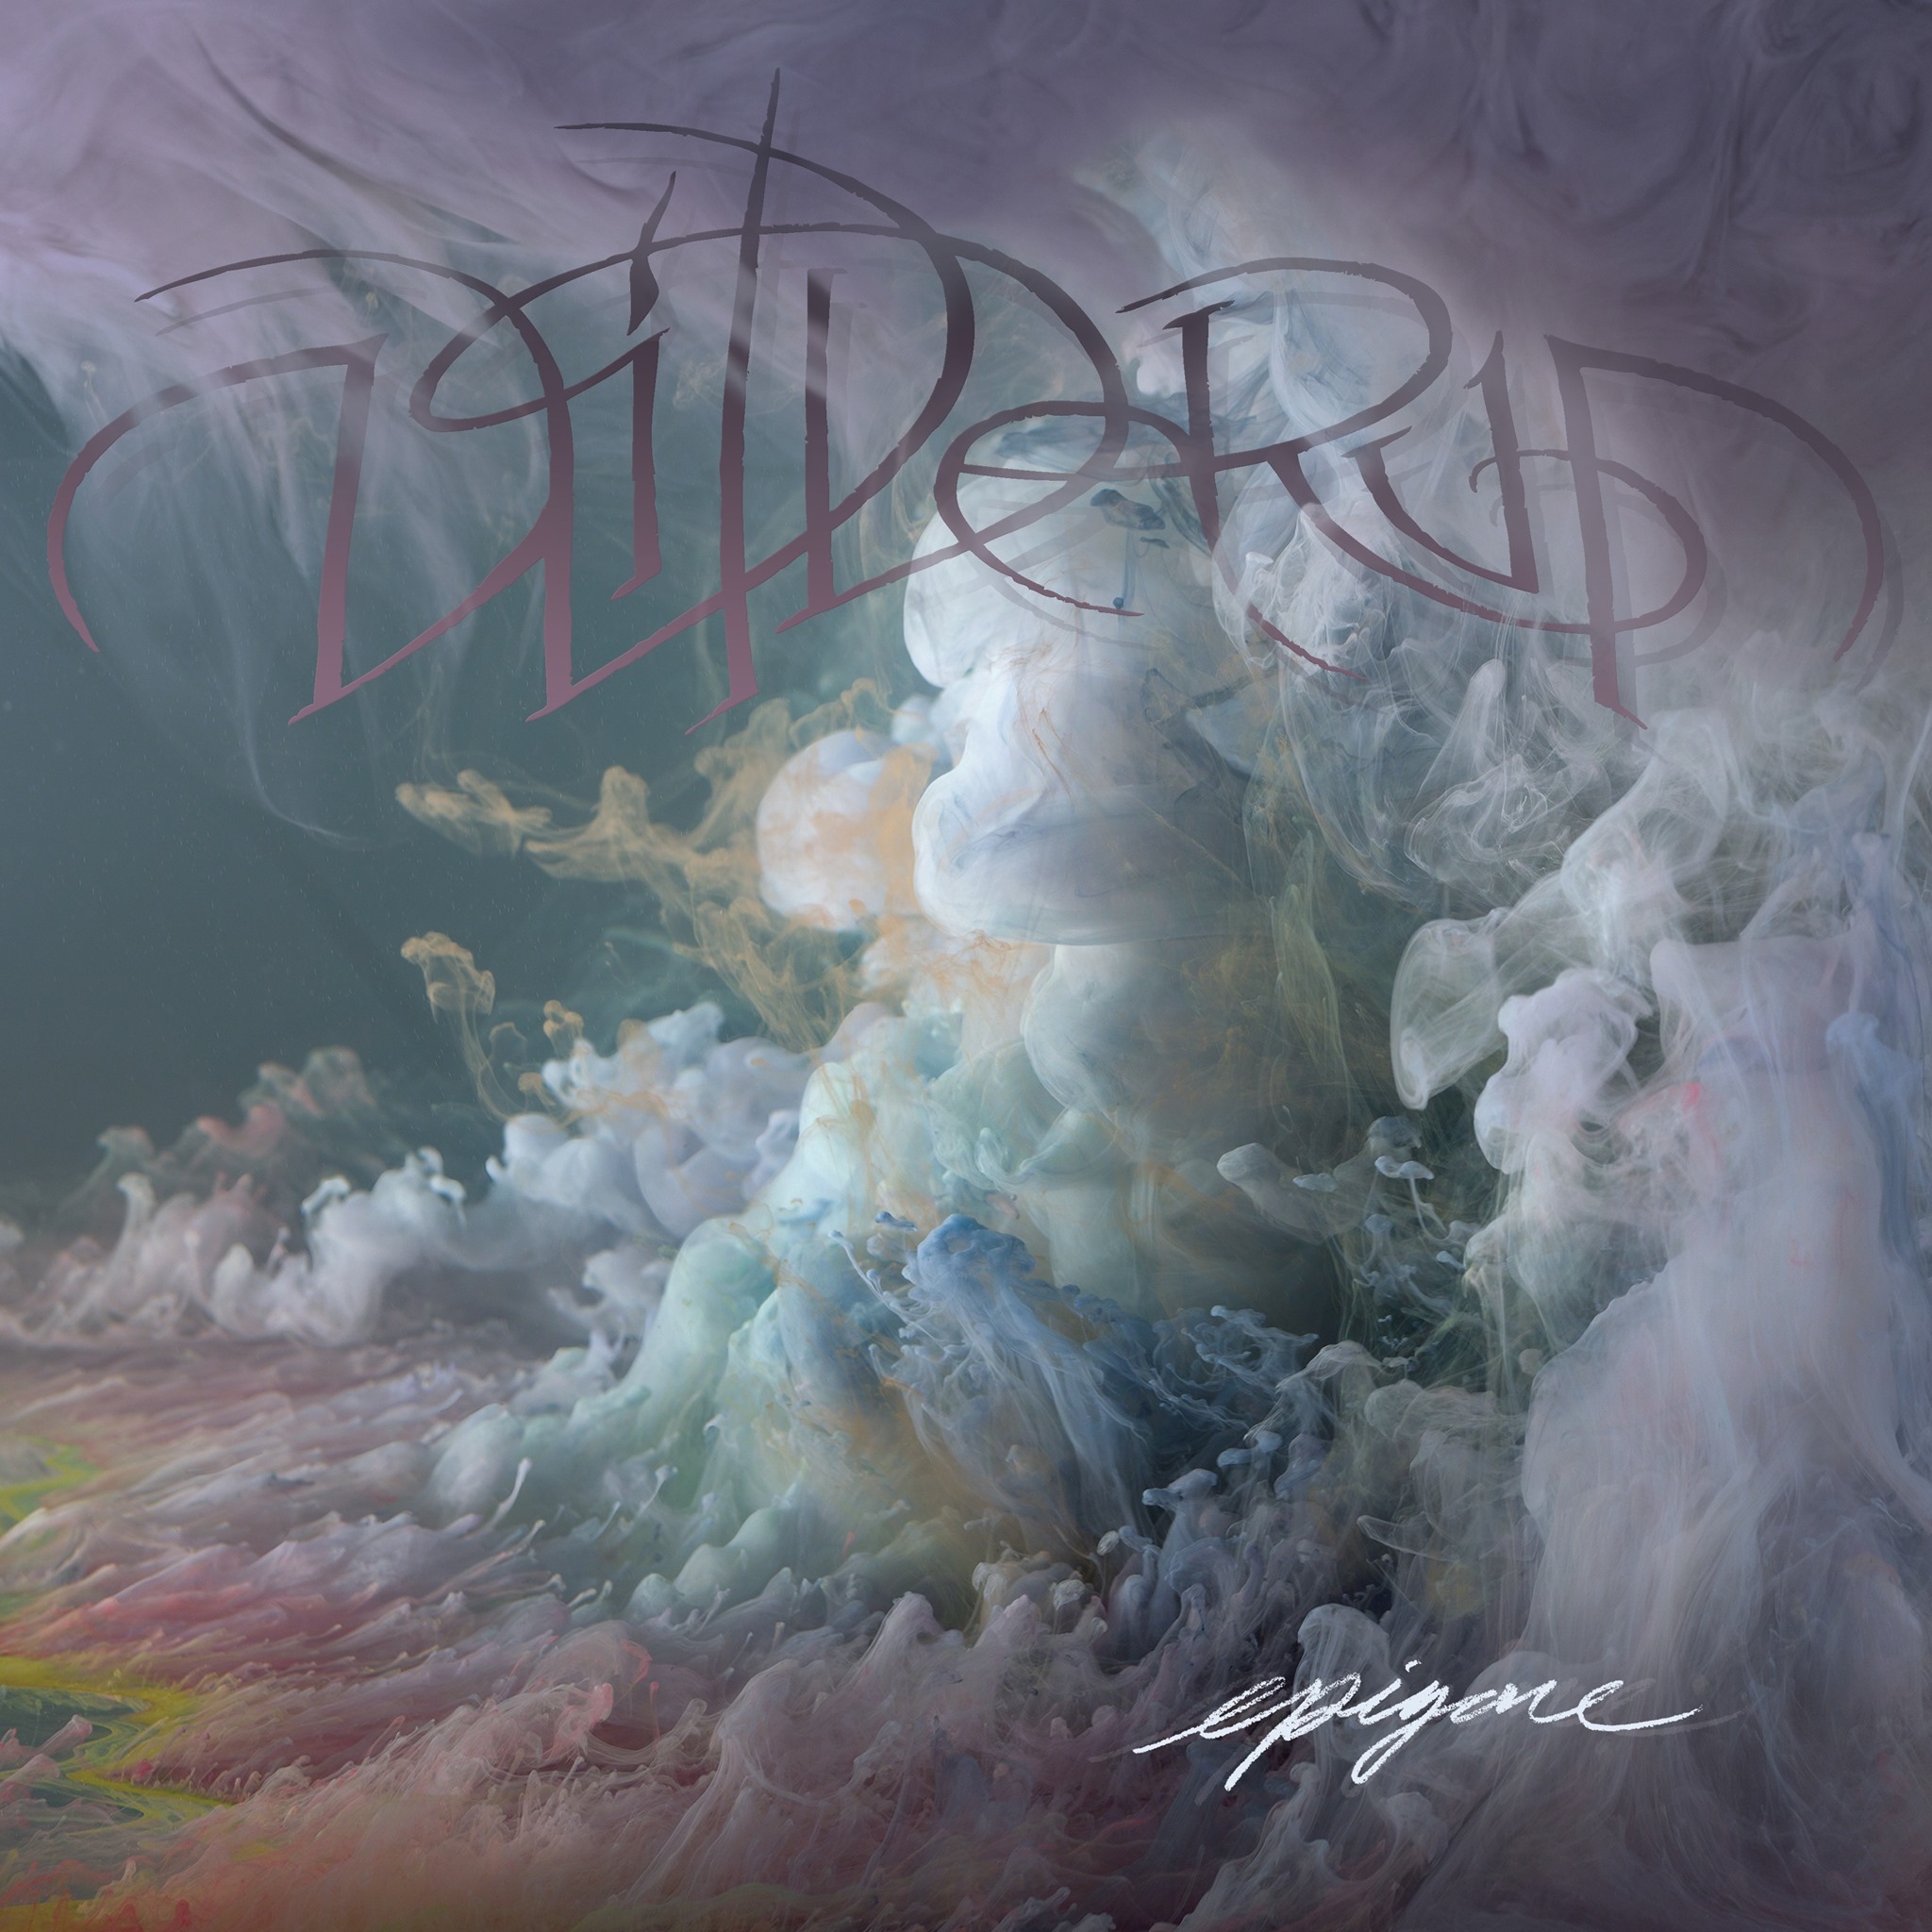 Los americanos Wilderun continúan experimentando su metal progresivo a otros niveles en su nuevo disco “Epigone”.